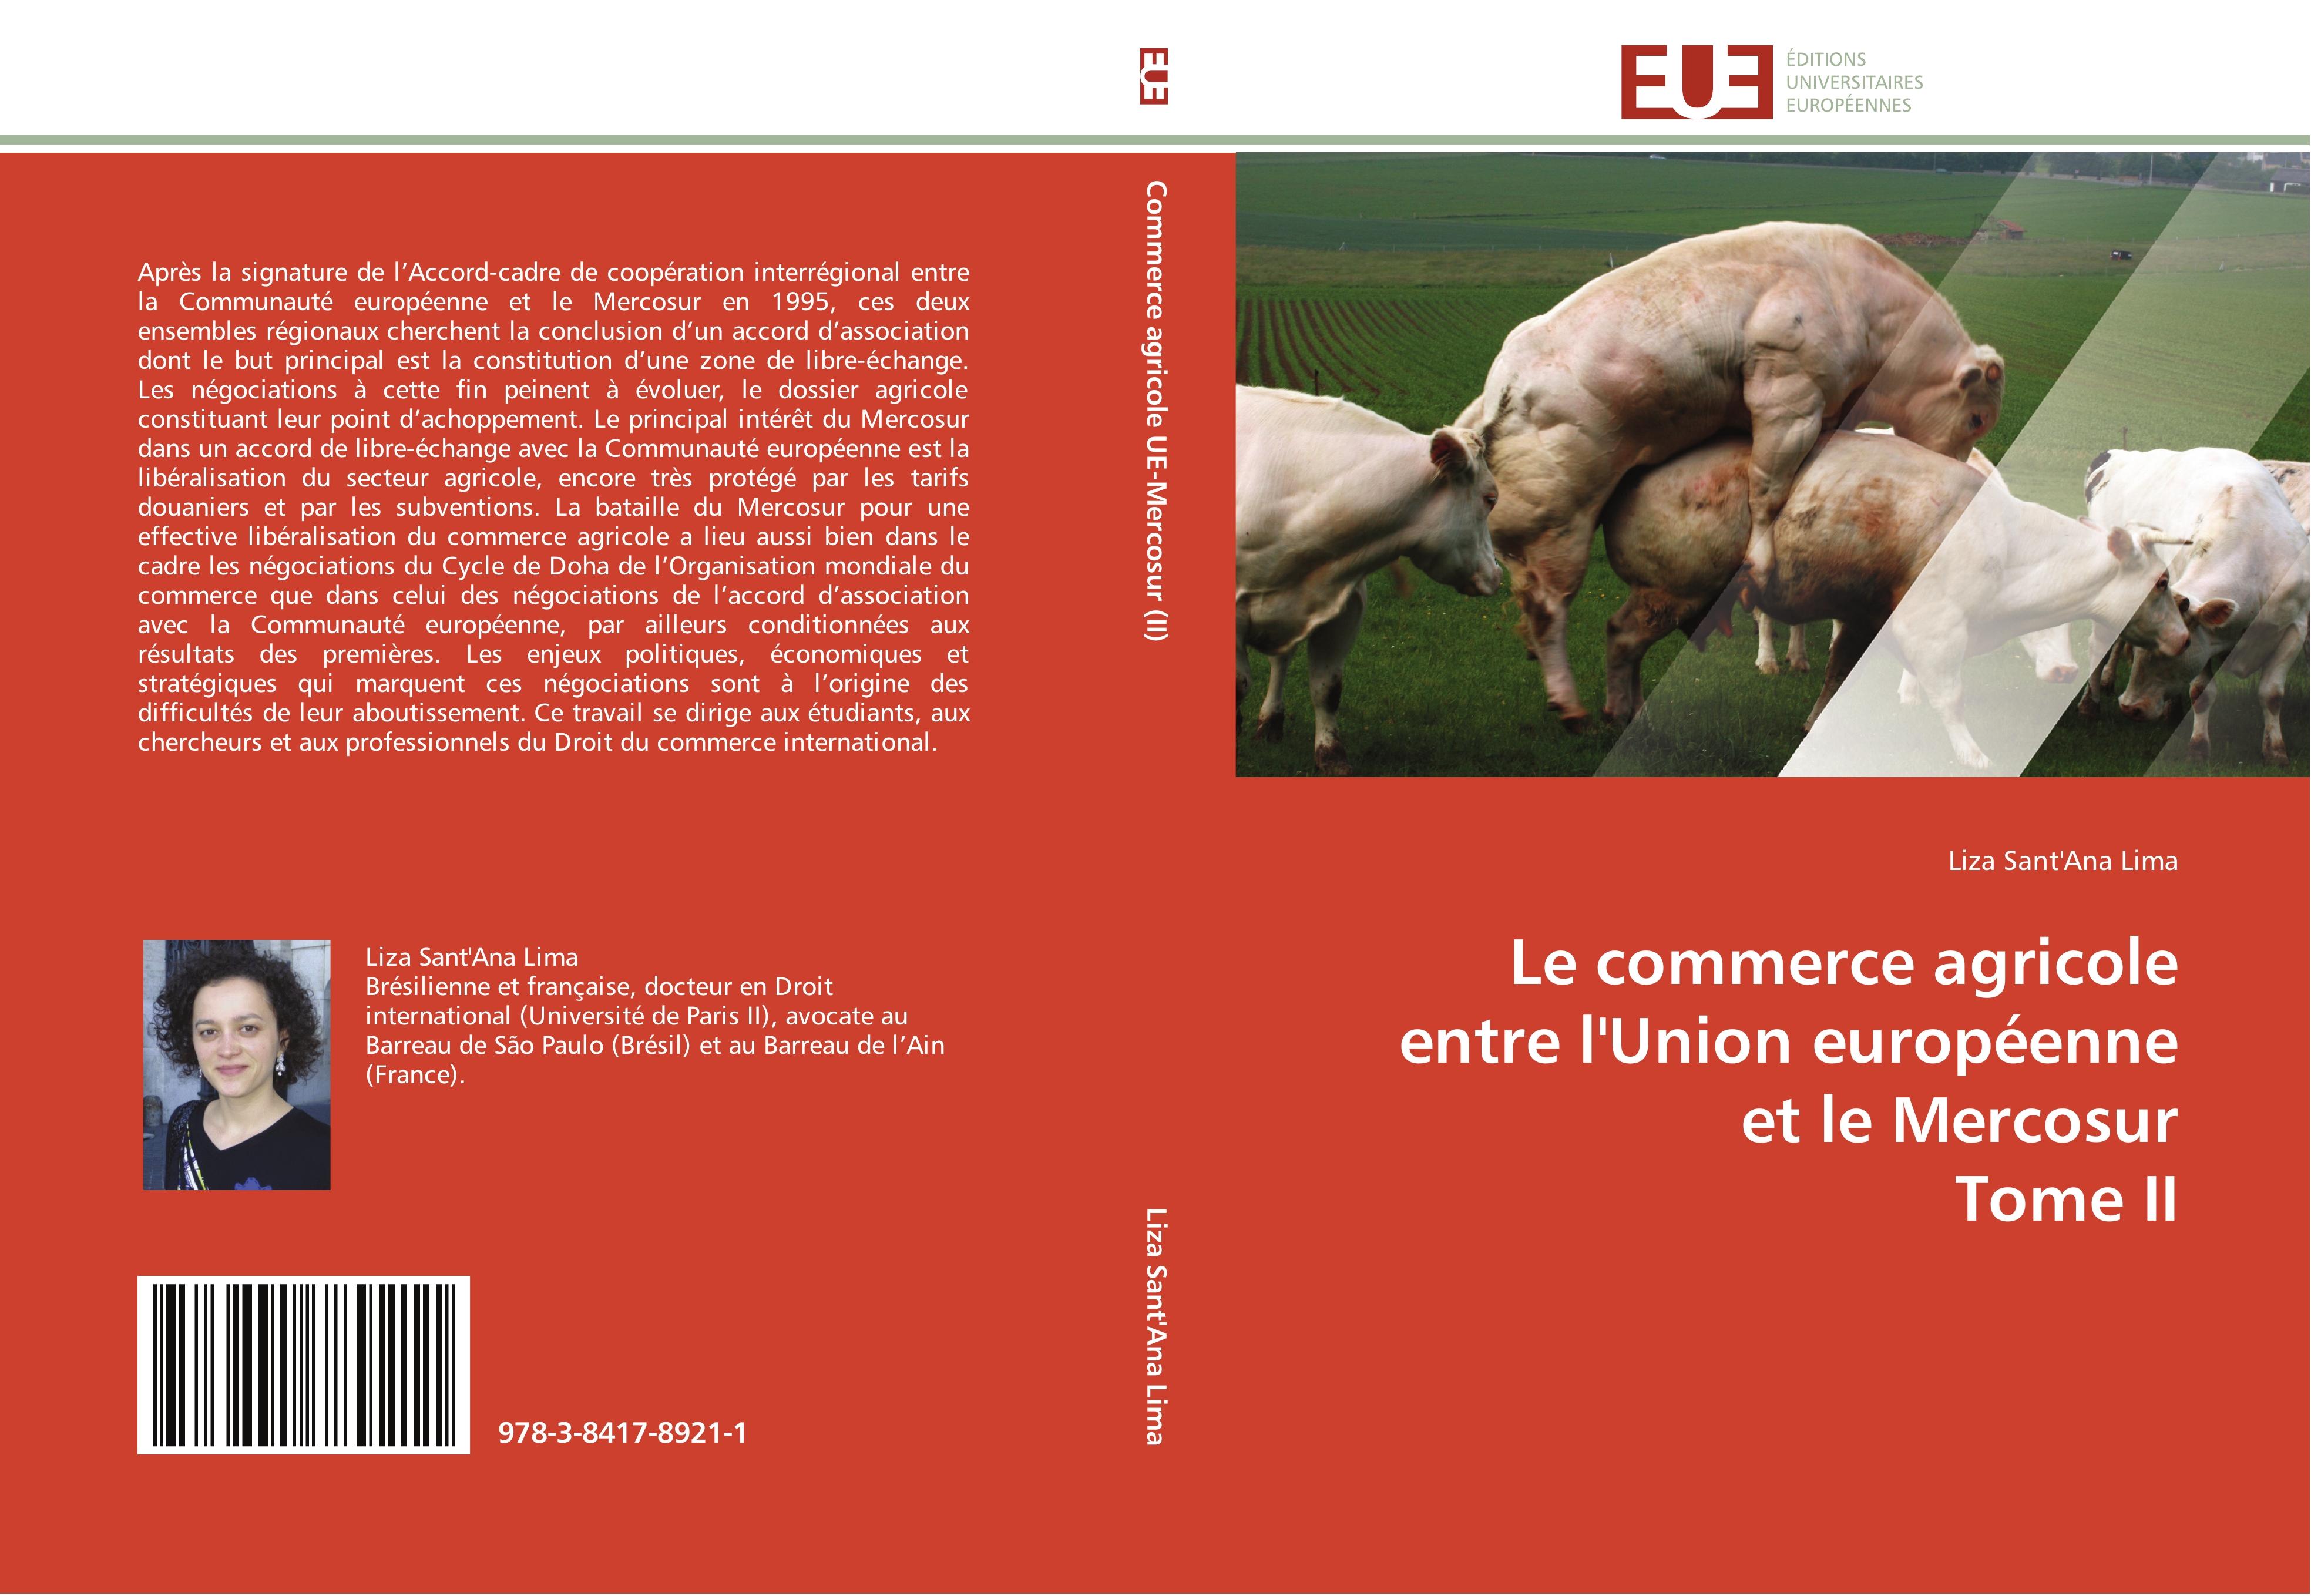 Le commerce agricole entre l Union européenne et le Mercosur Tome II - Liza Sant Ana Lima